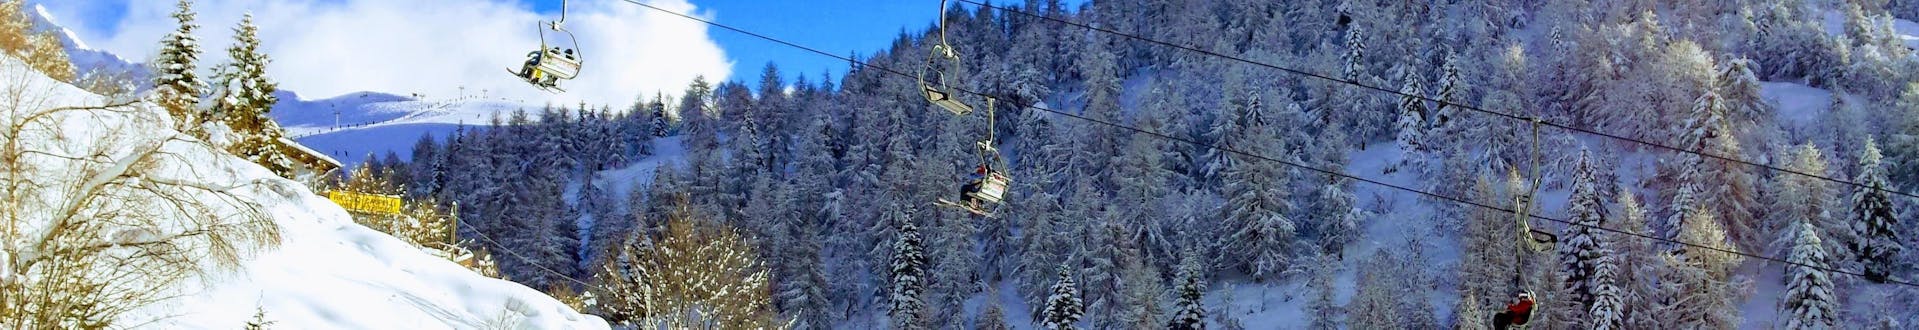 Skilift die omhoog gaat in het skigebied Piani di Bobbio, Italië.